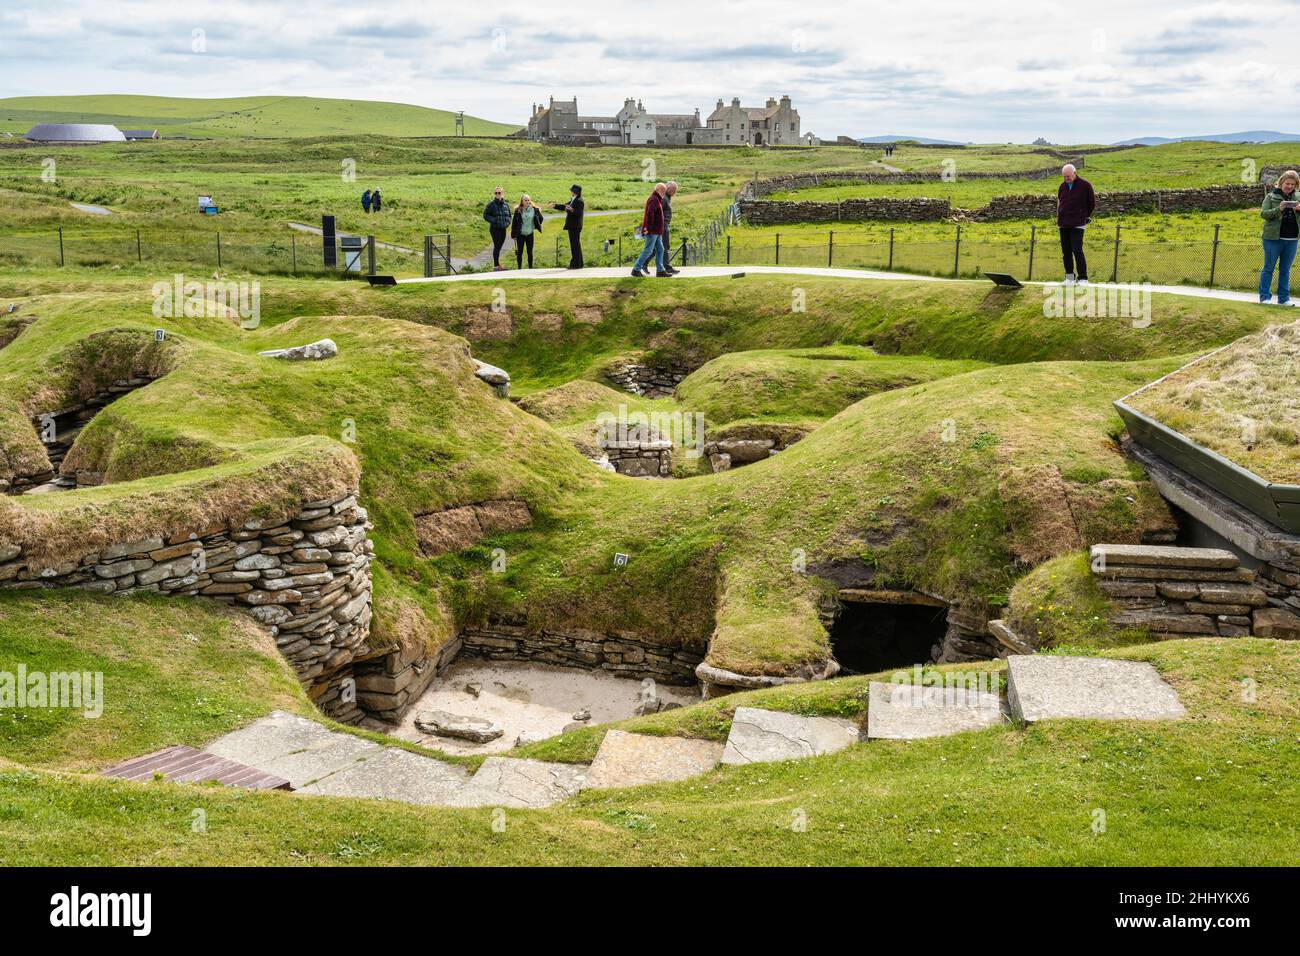 Asentamiento neolítico de Skara Brae junto a la Bahía de Skaill cerca de Sandwick en el territorio continental de Orkney en Escocia Foto de stock